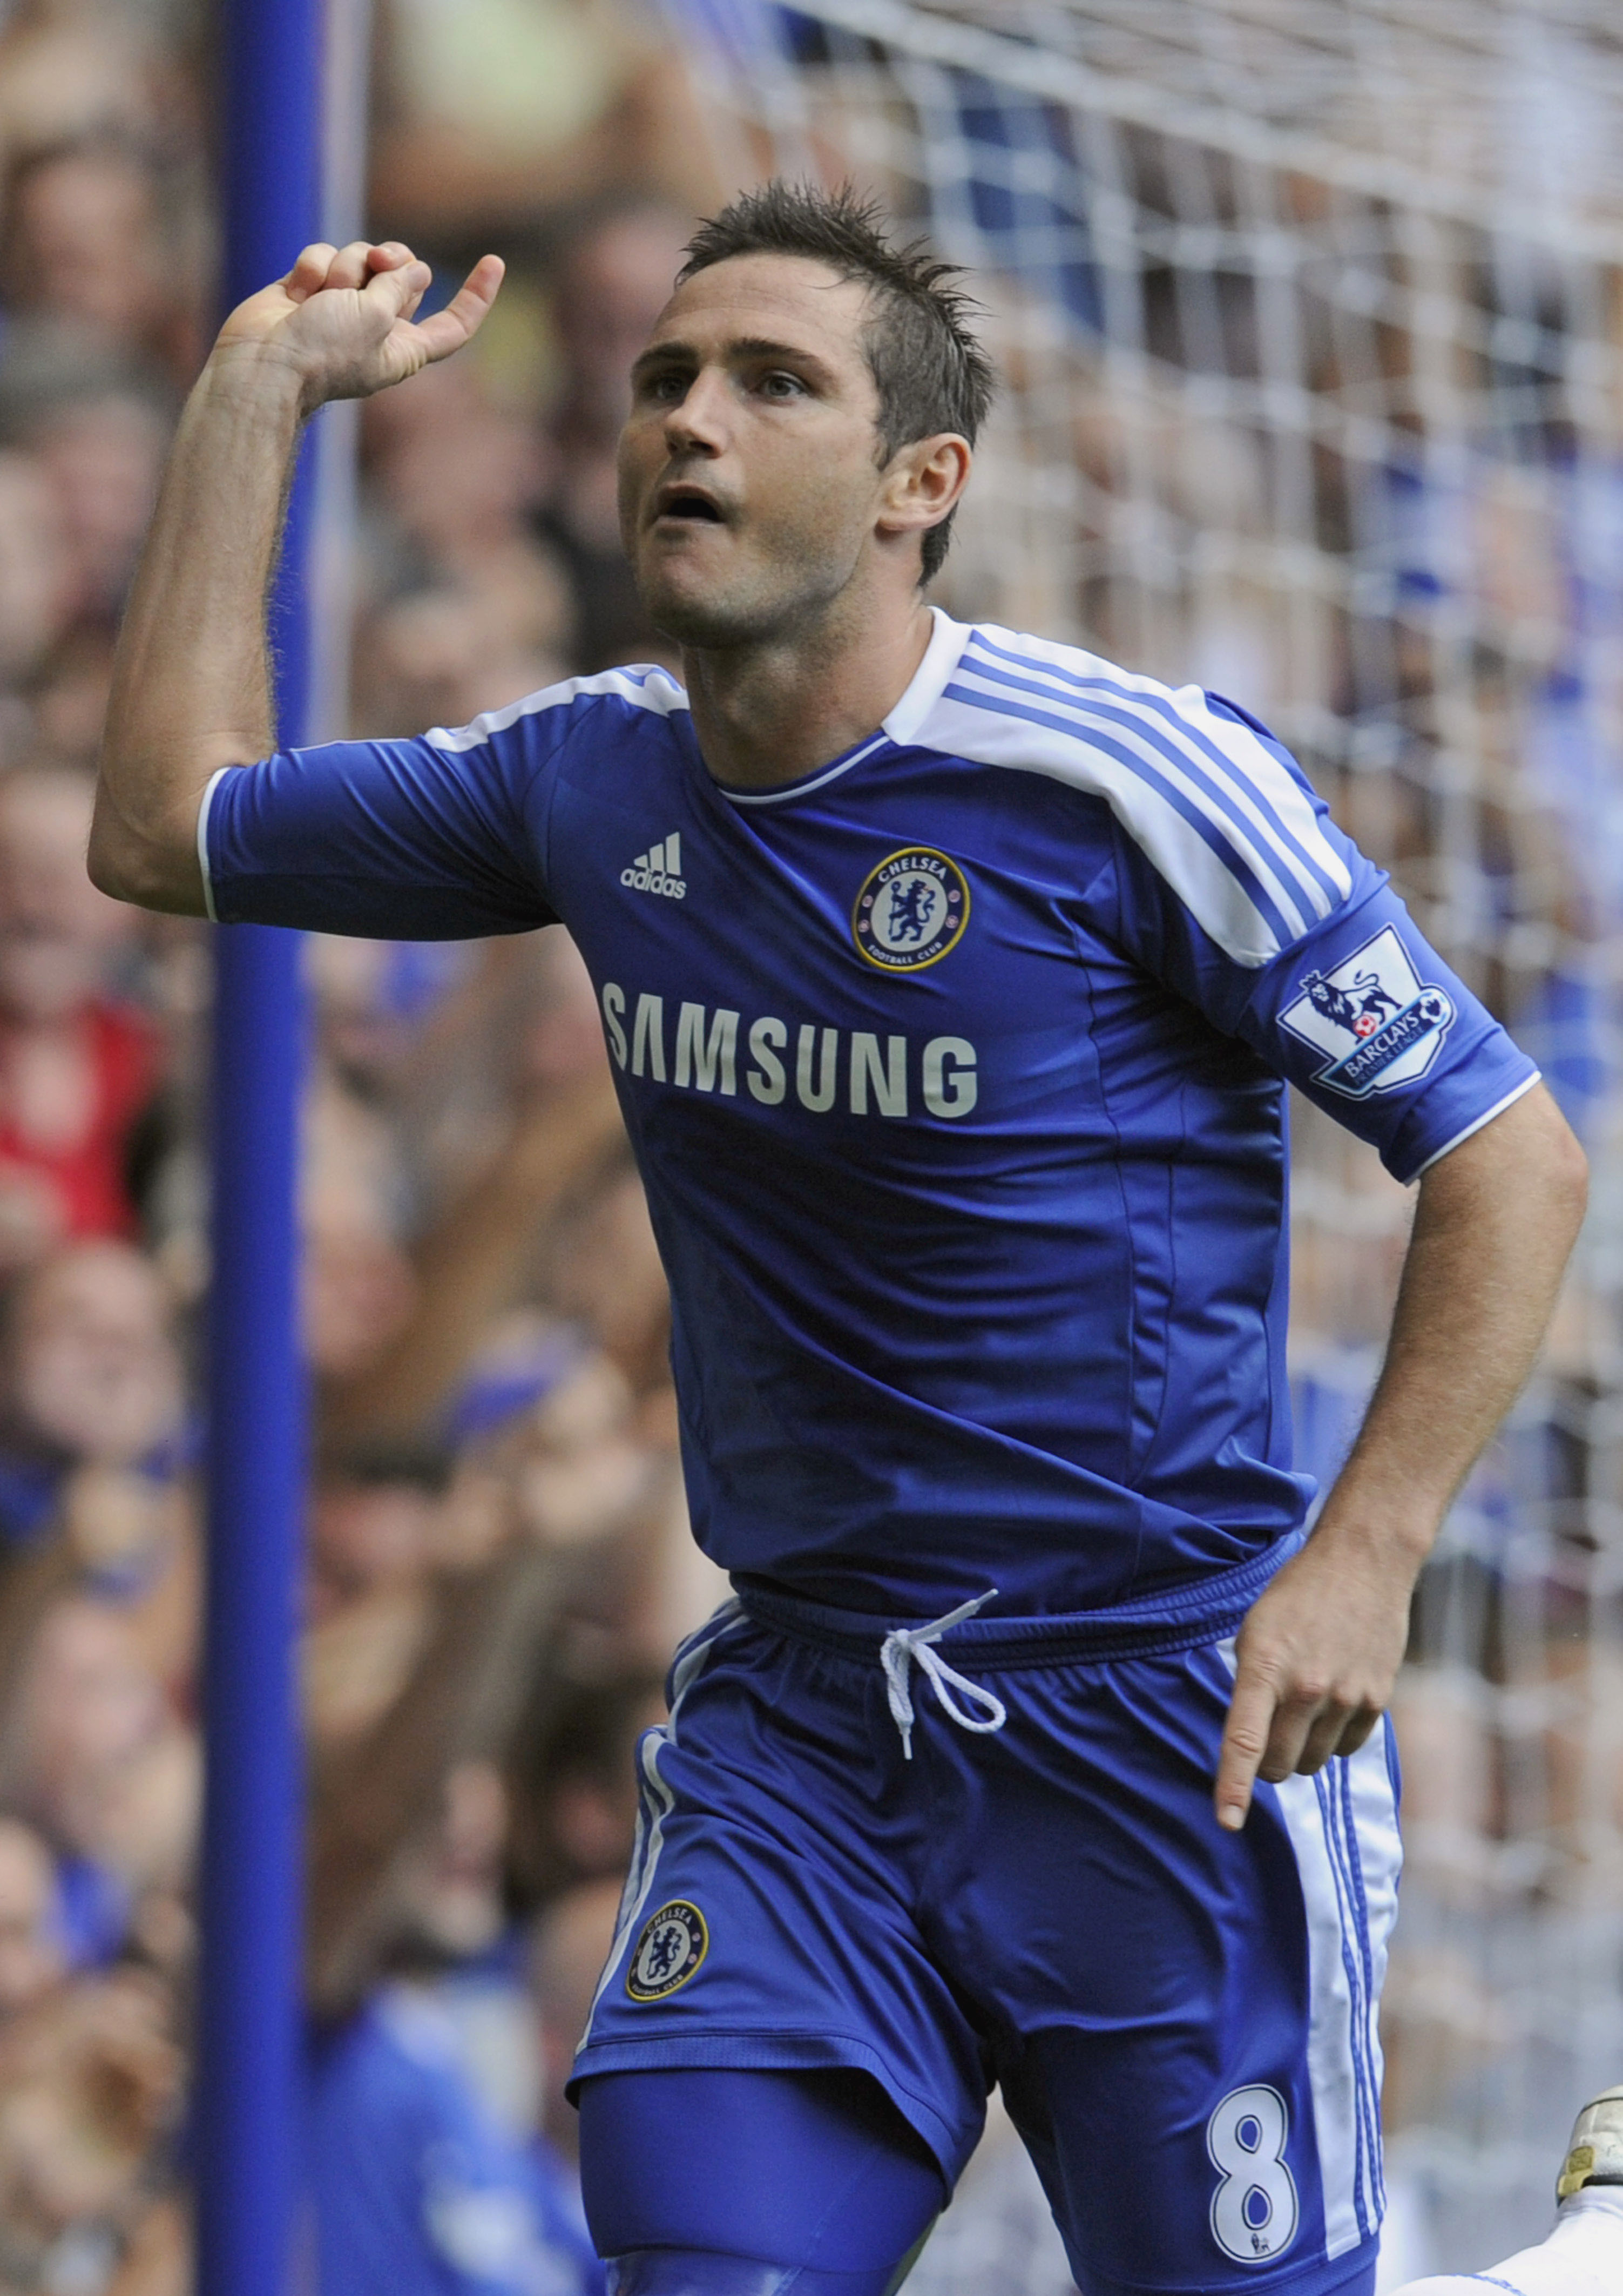 Chelsea tog sin andra raka seger när Norwich besegrades med 3-1. Här jublar Frank Lampard efter sitt straffmål.